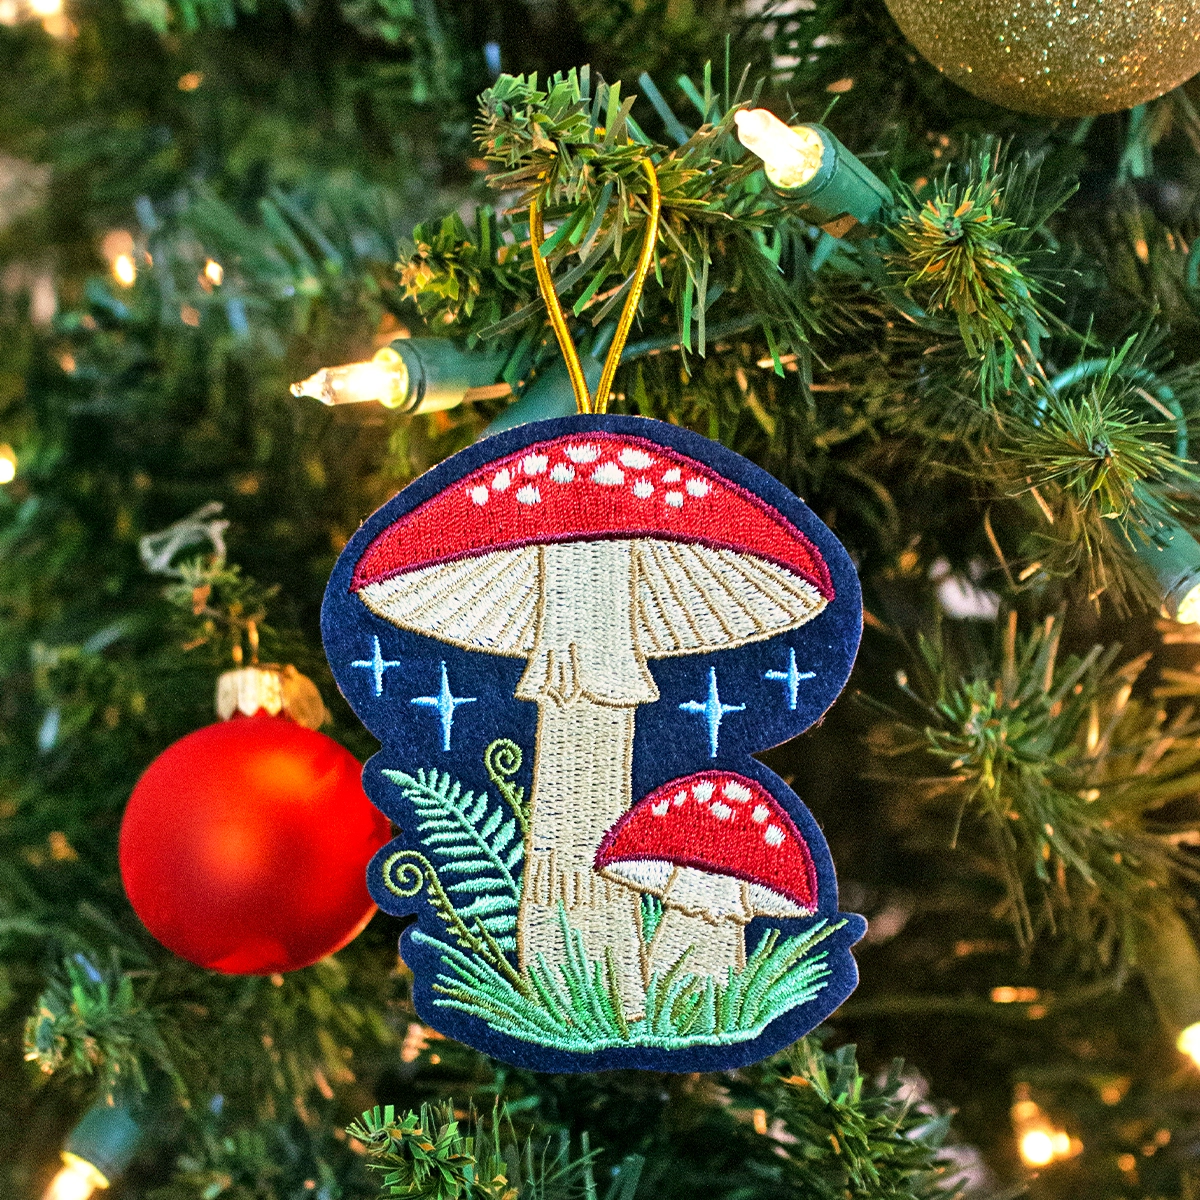 mushroom & fern ornament